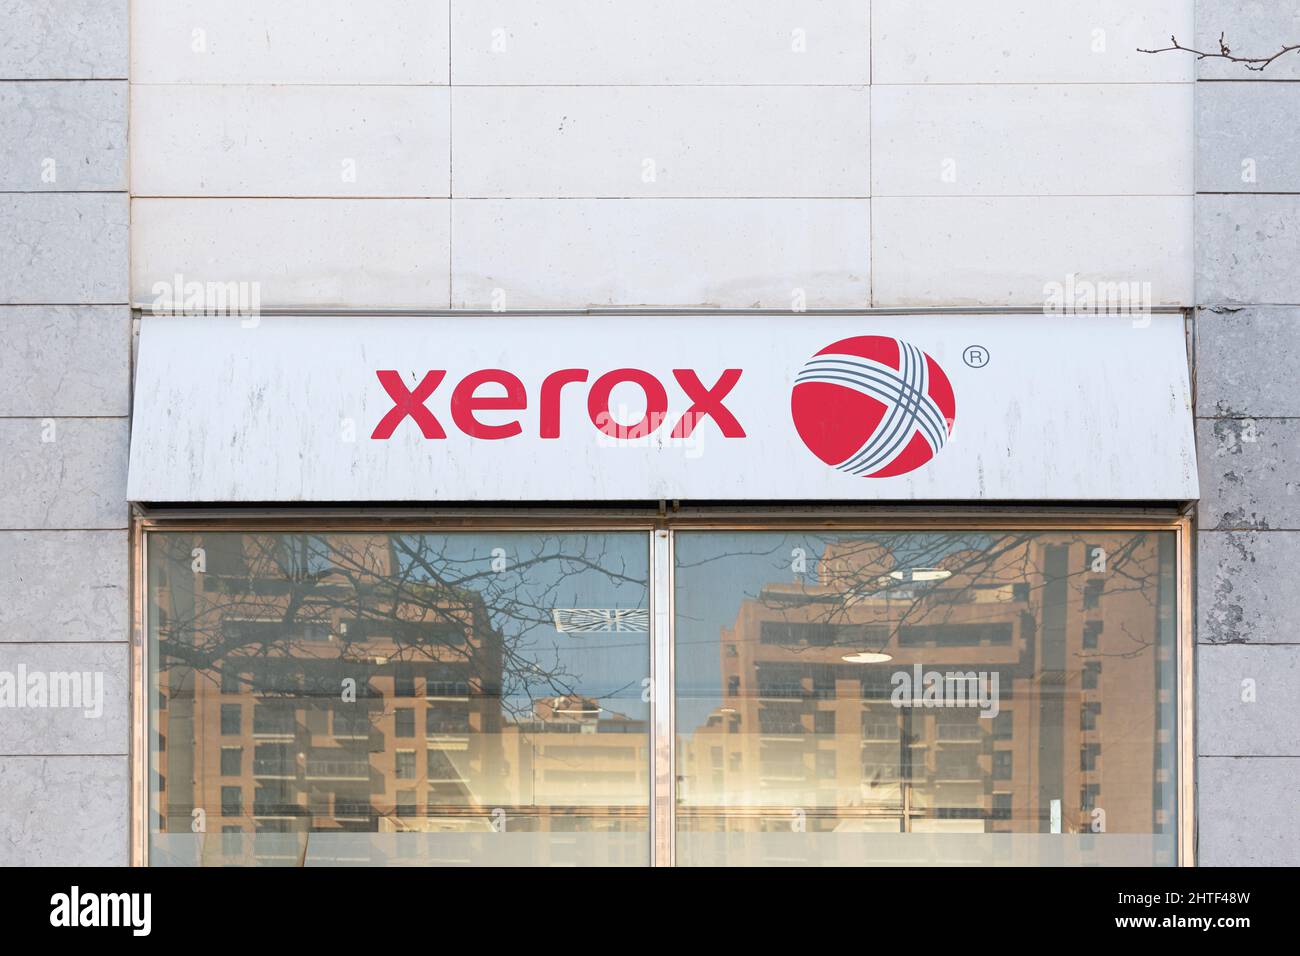 VALENCE, ESPAGNE - 22 FÉVRIER 2022 : Xerox est une société américaine qui vend des produits et services d'impression et de documents numériques Banque D'Images